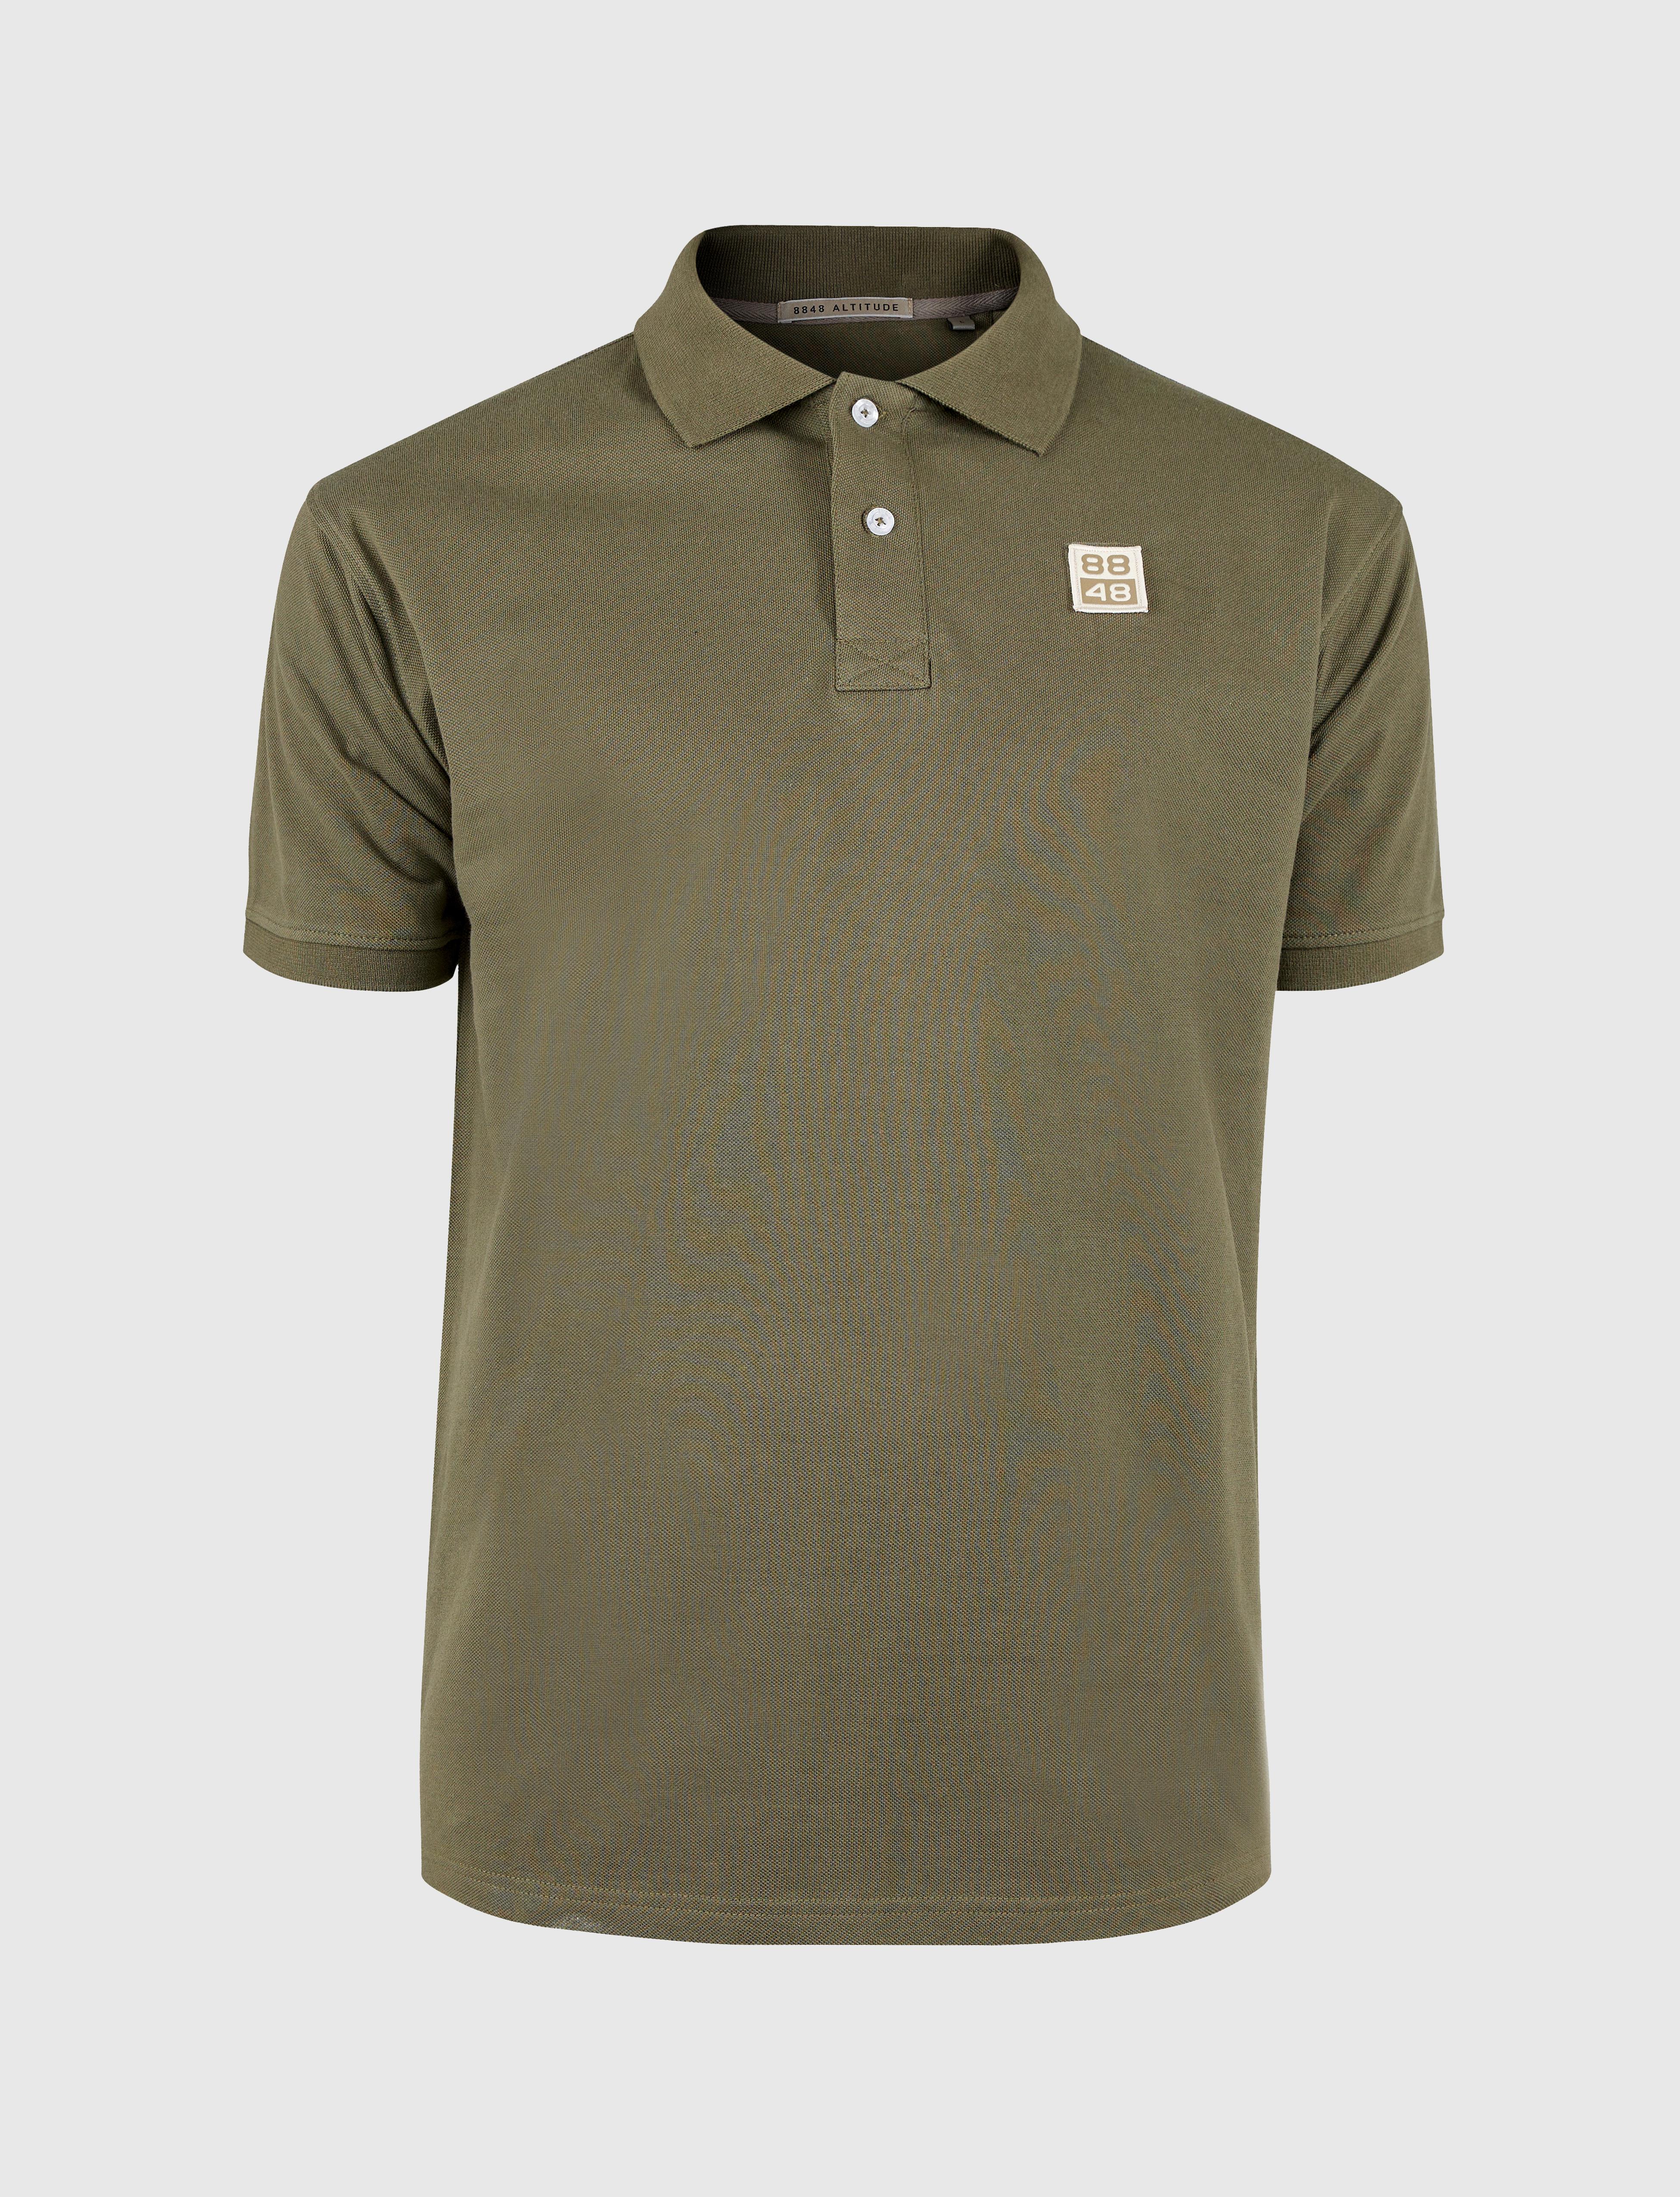 88 Logo Polo Shirt Army Green - Green polo shirt men